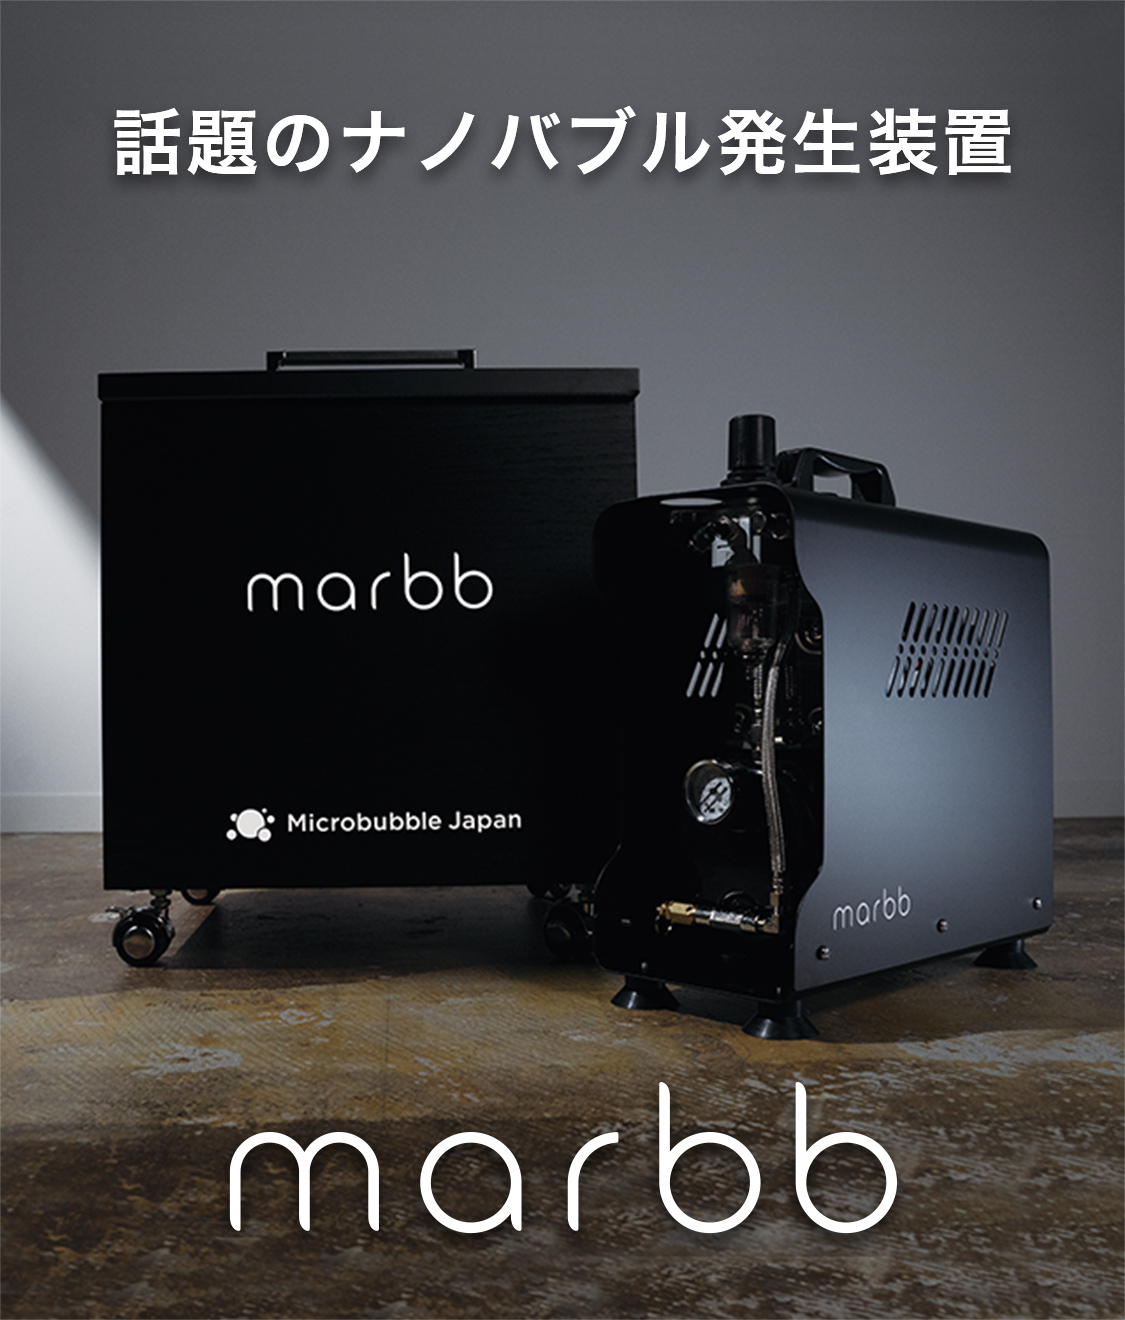 話題のナノバブル発生装置marbb（マーブ）